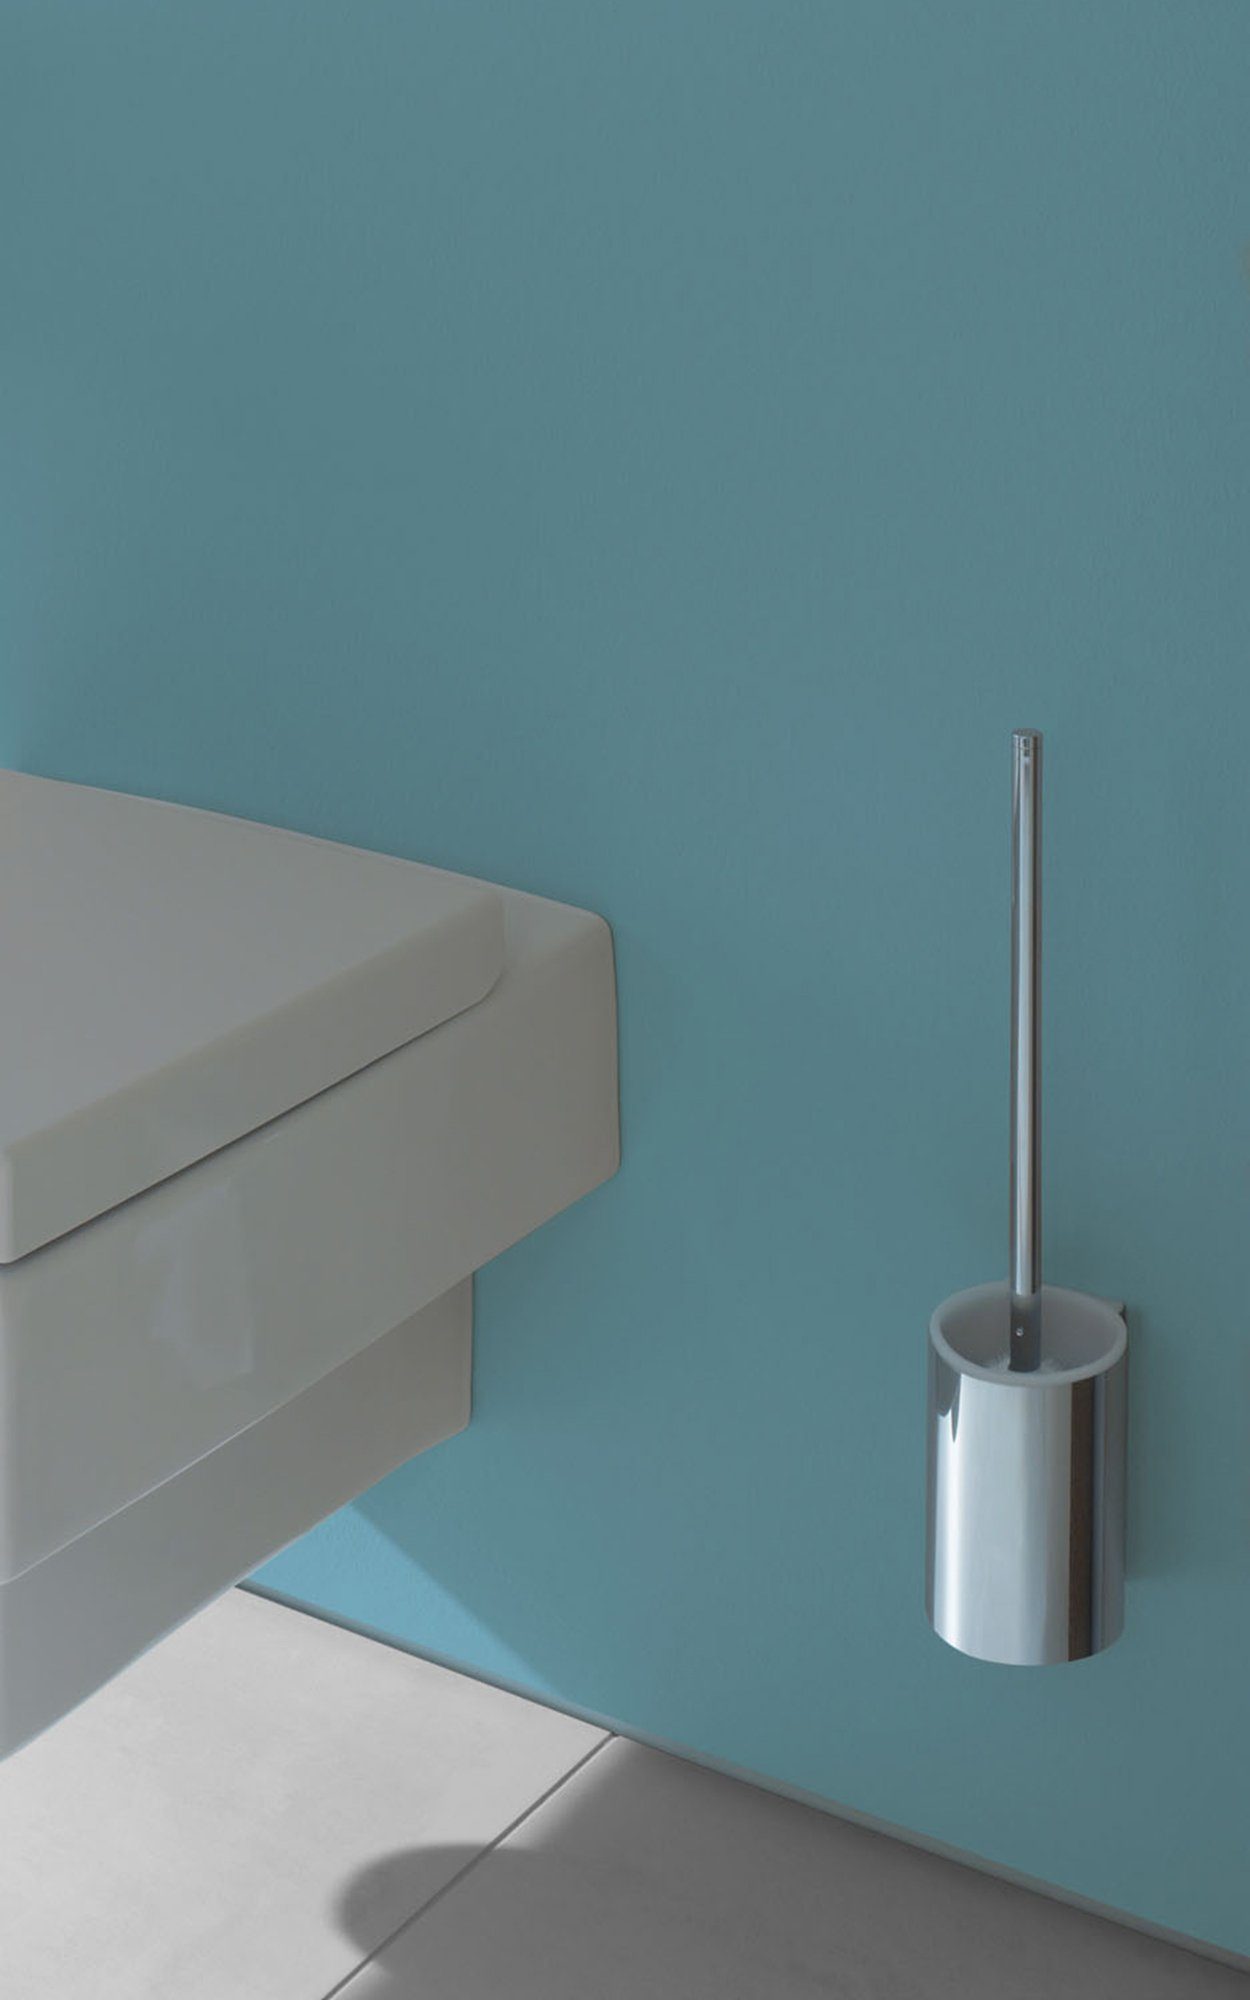 Metall, WC-Reinigungsbürste (Vormontiert), Toilettenbürstengarnitur aus chrom/weiß Plan, mit Keuco WC-Bürste